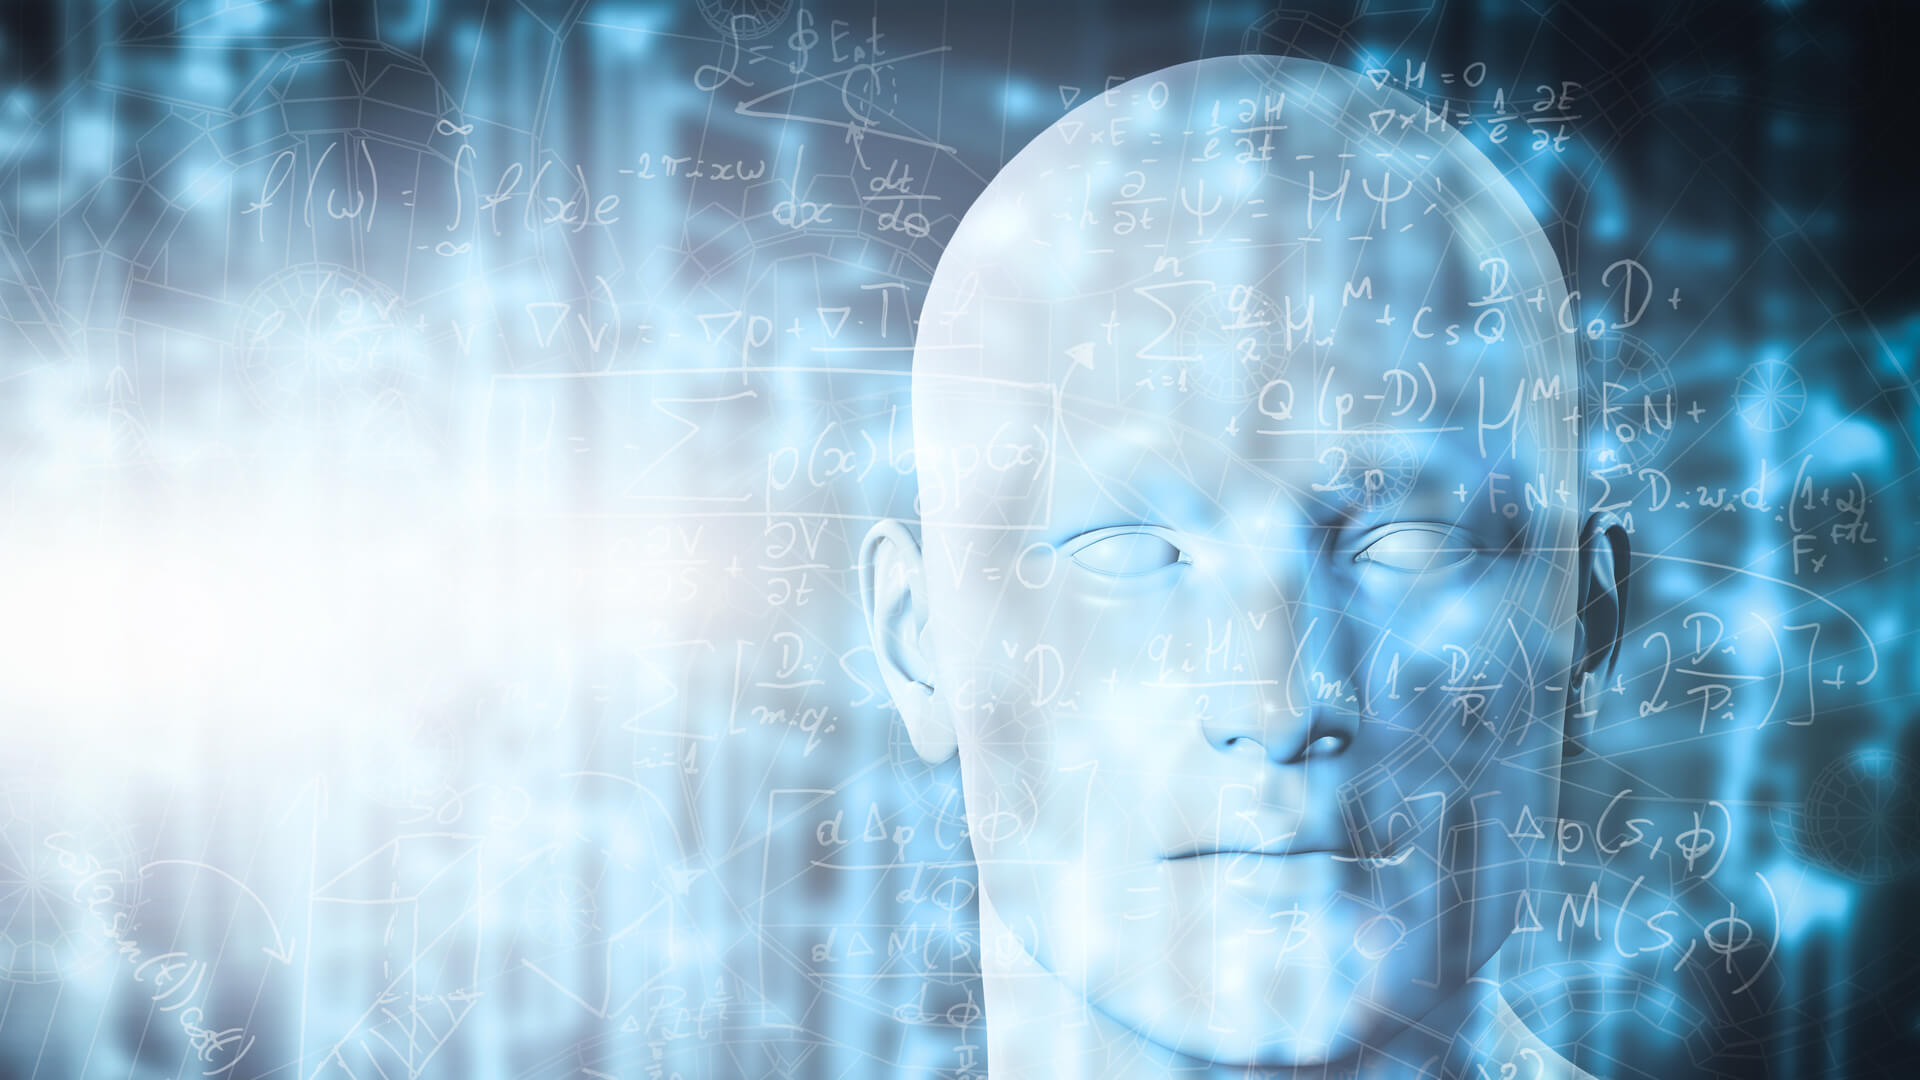 Σύστημα τεχνητής νοημοσύνης βοηθά τετραπληγικούς να «γράψουν» με το μυαλό